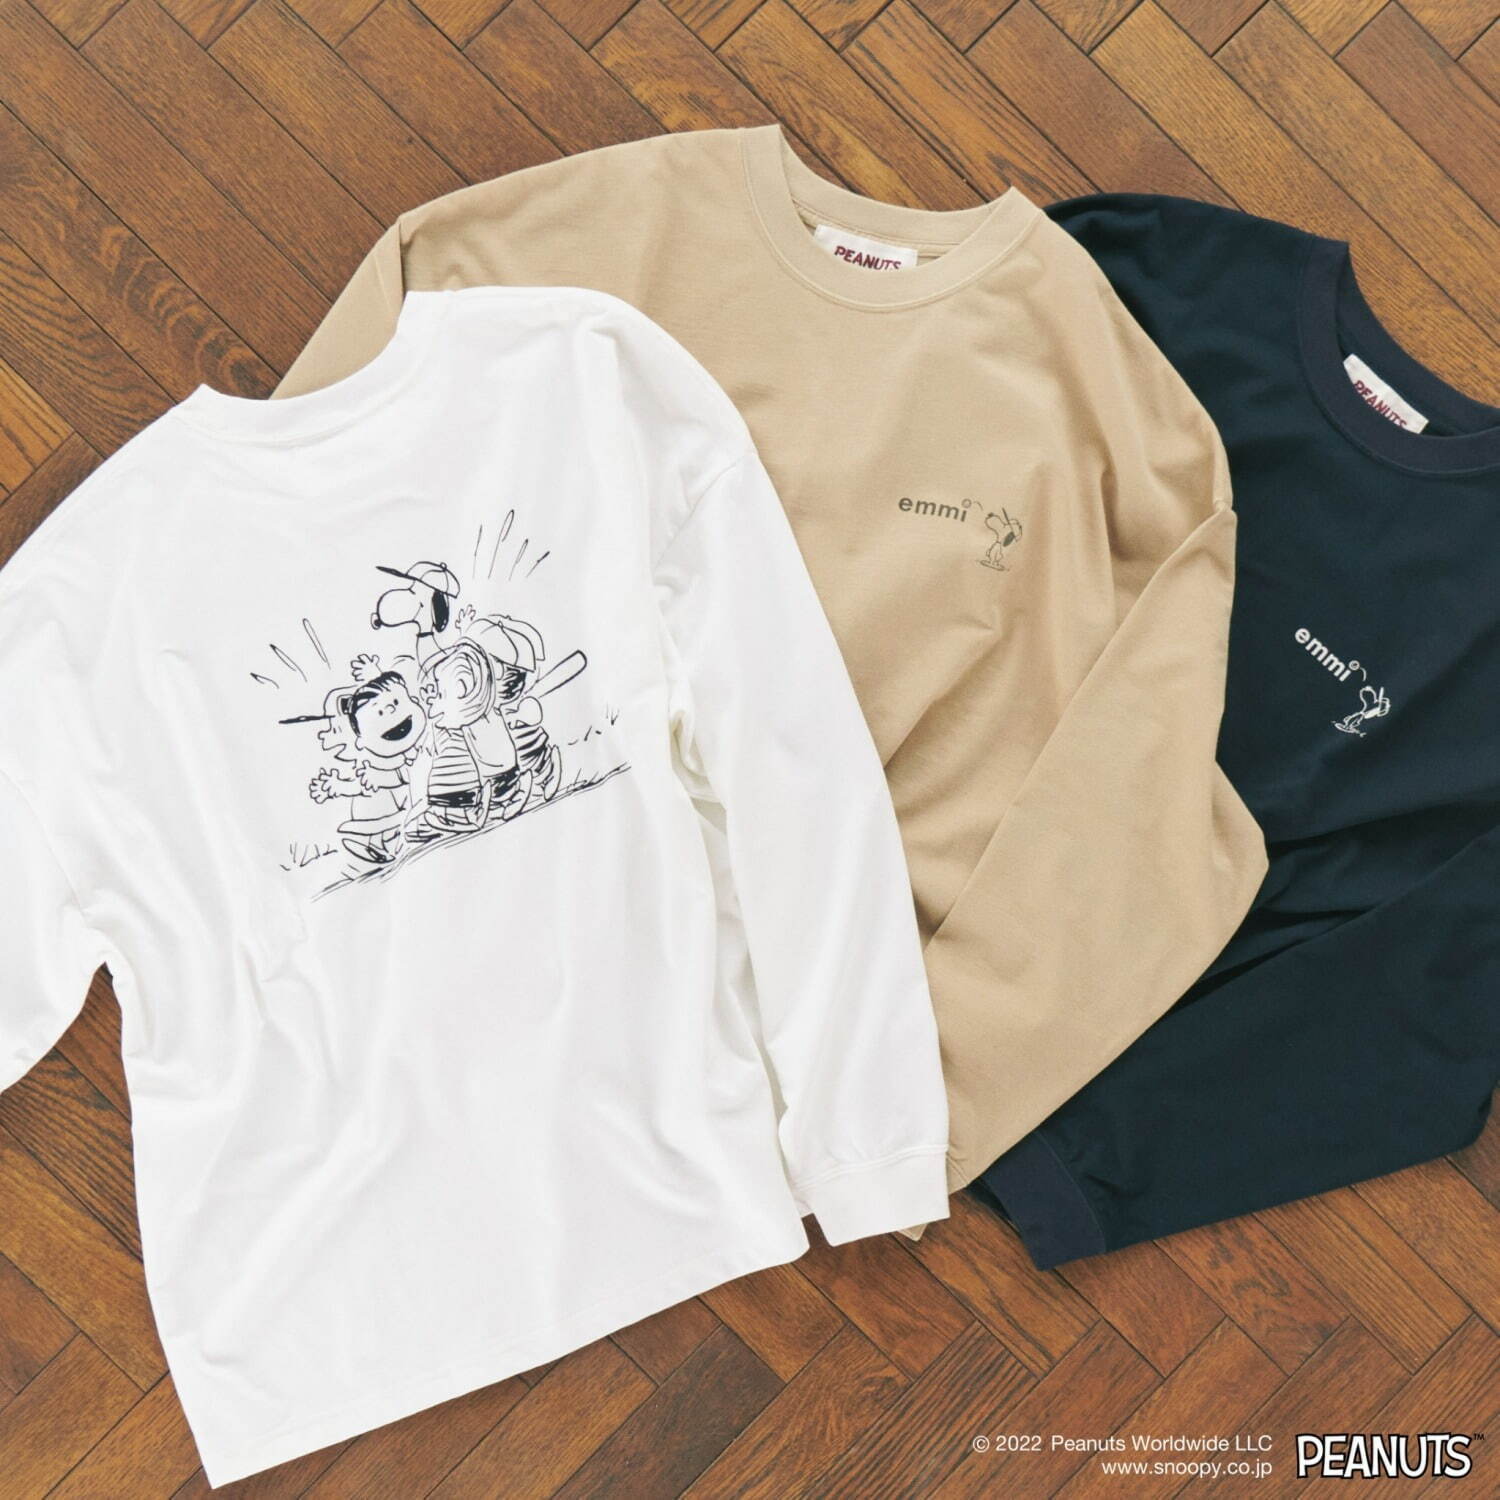 emmi meets PEANUTS Print Long T-shirt 各6,600円